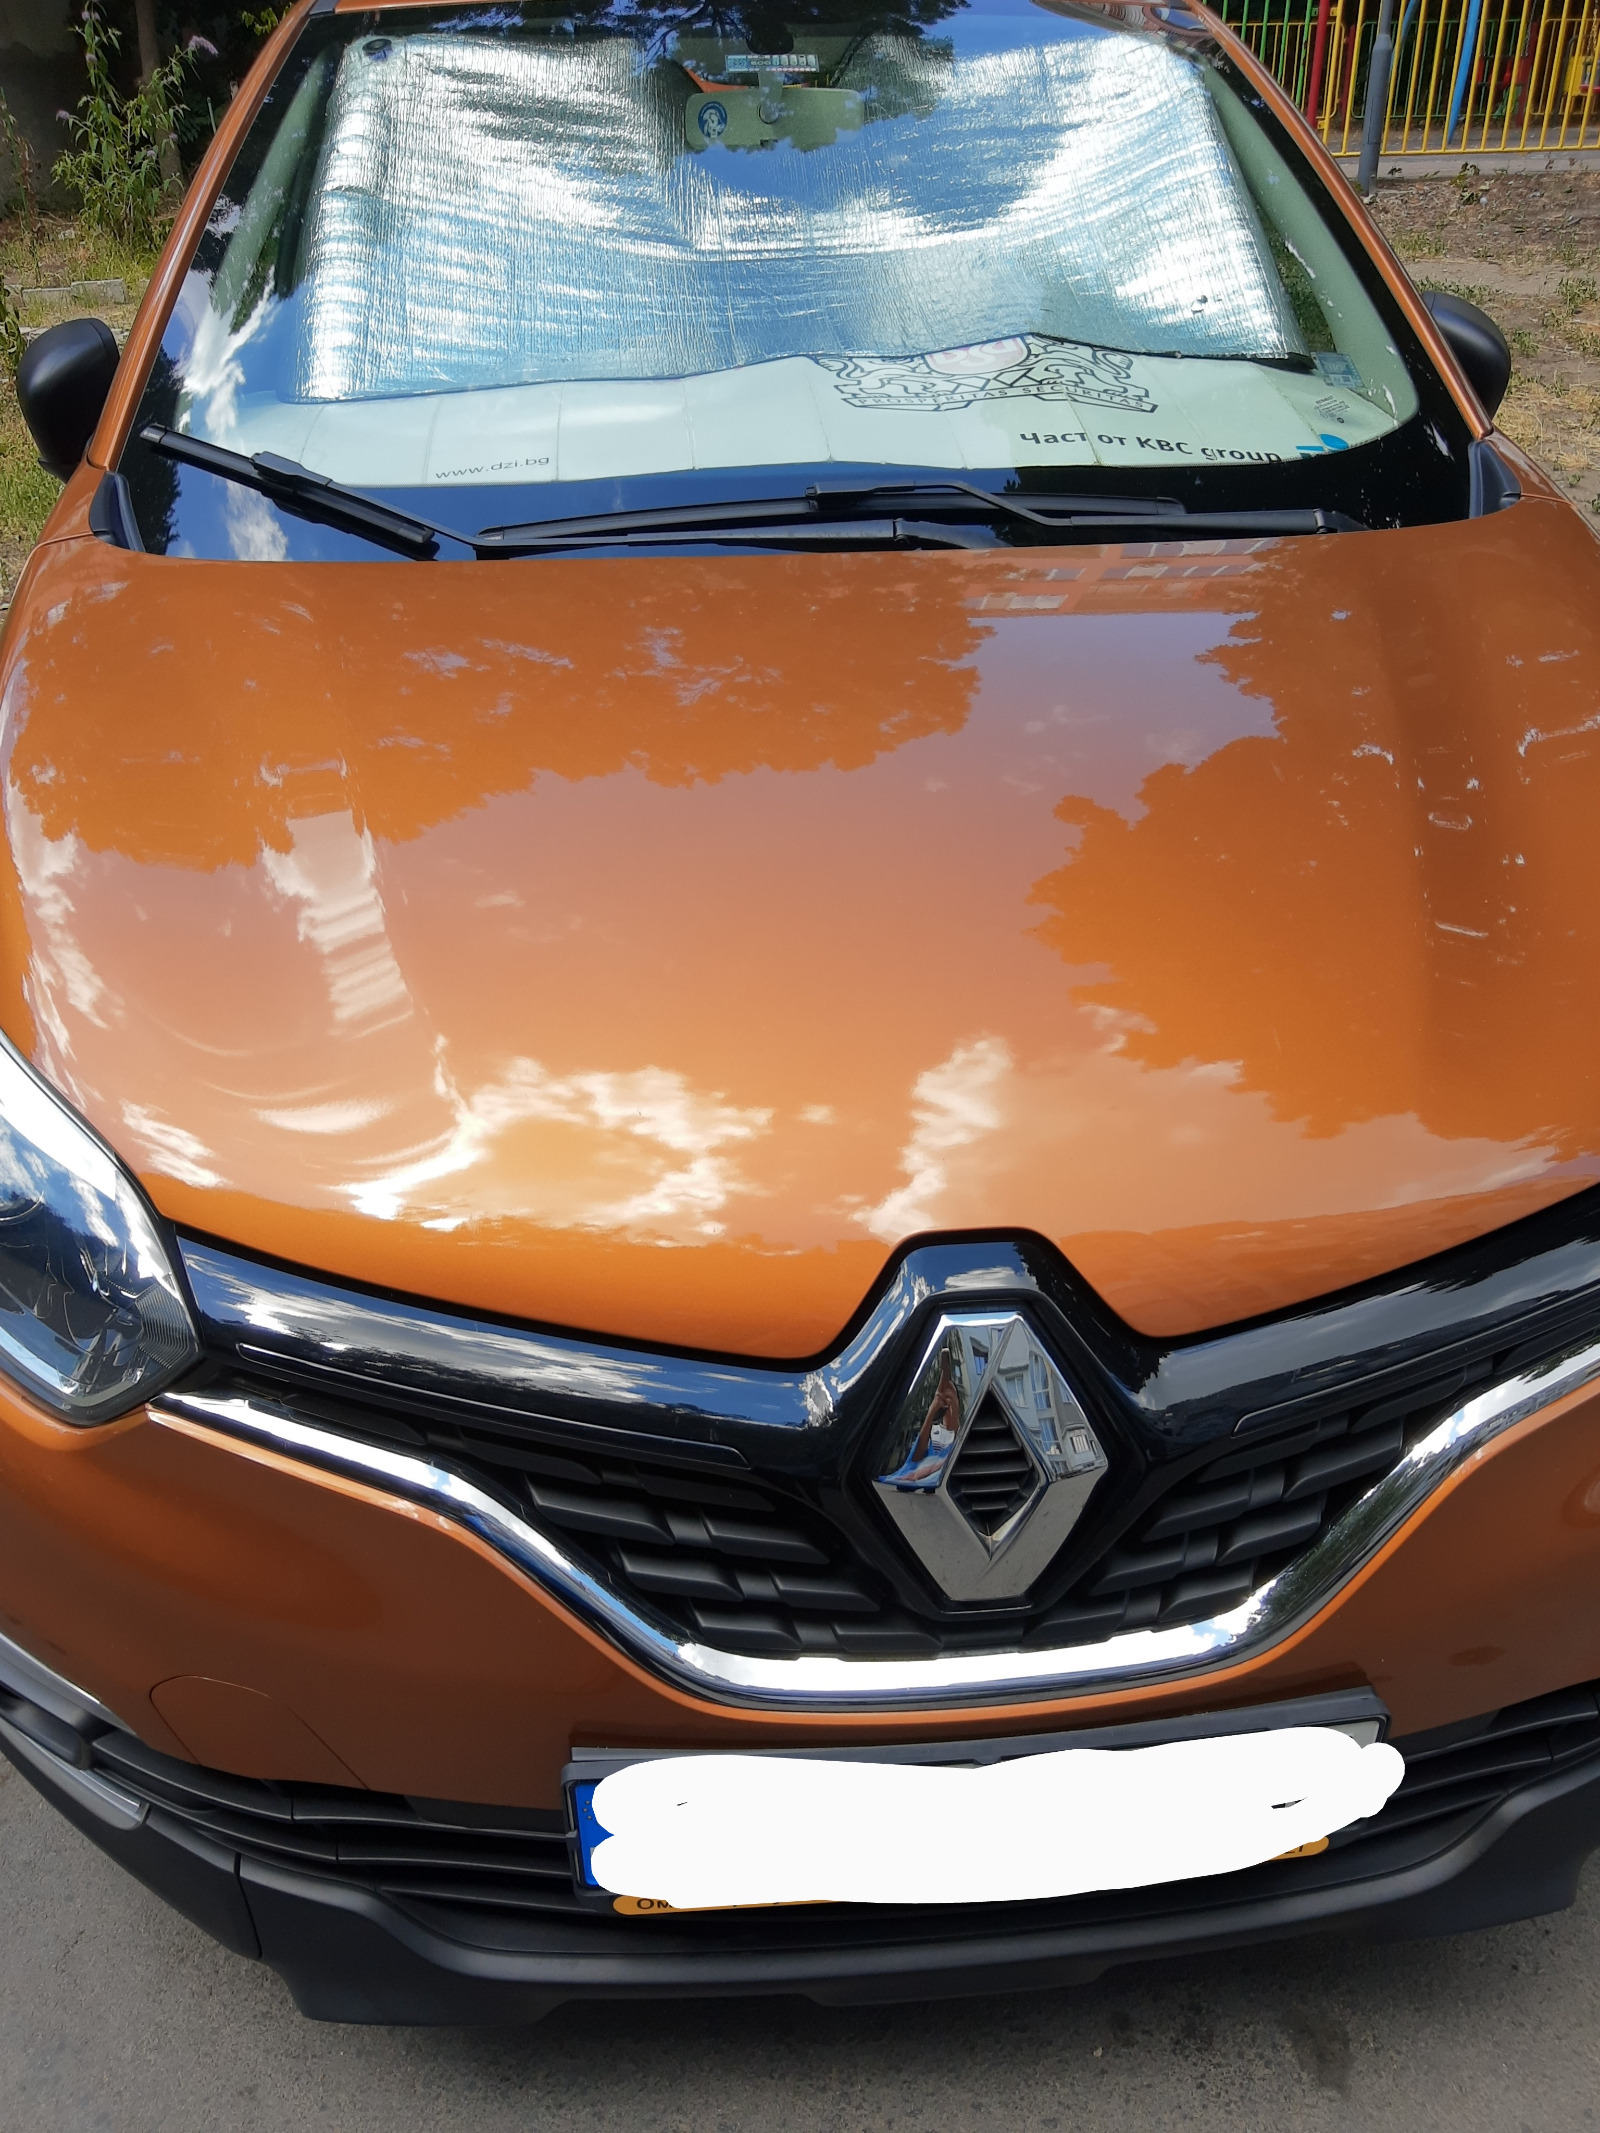 Renault Captur  - изображение 1